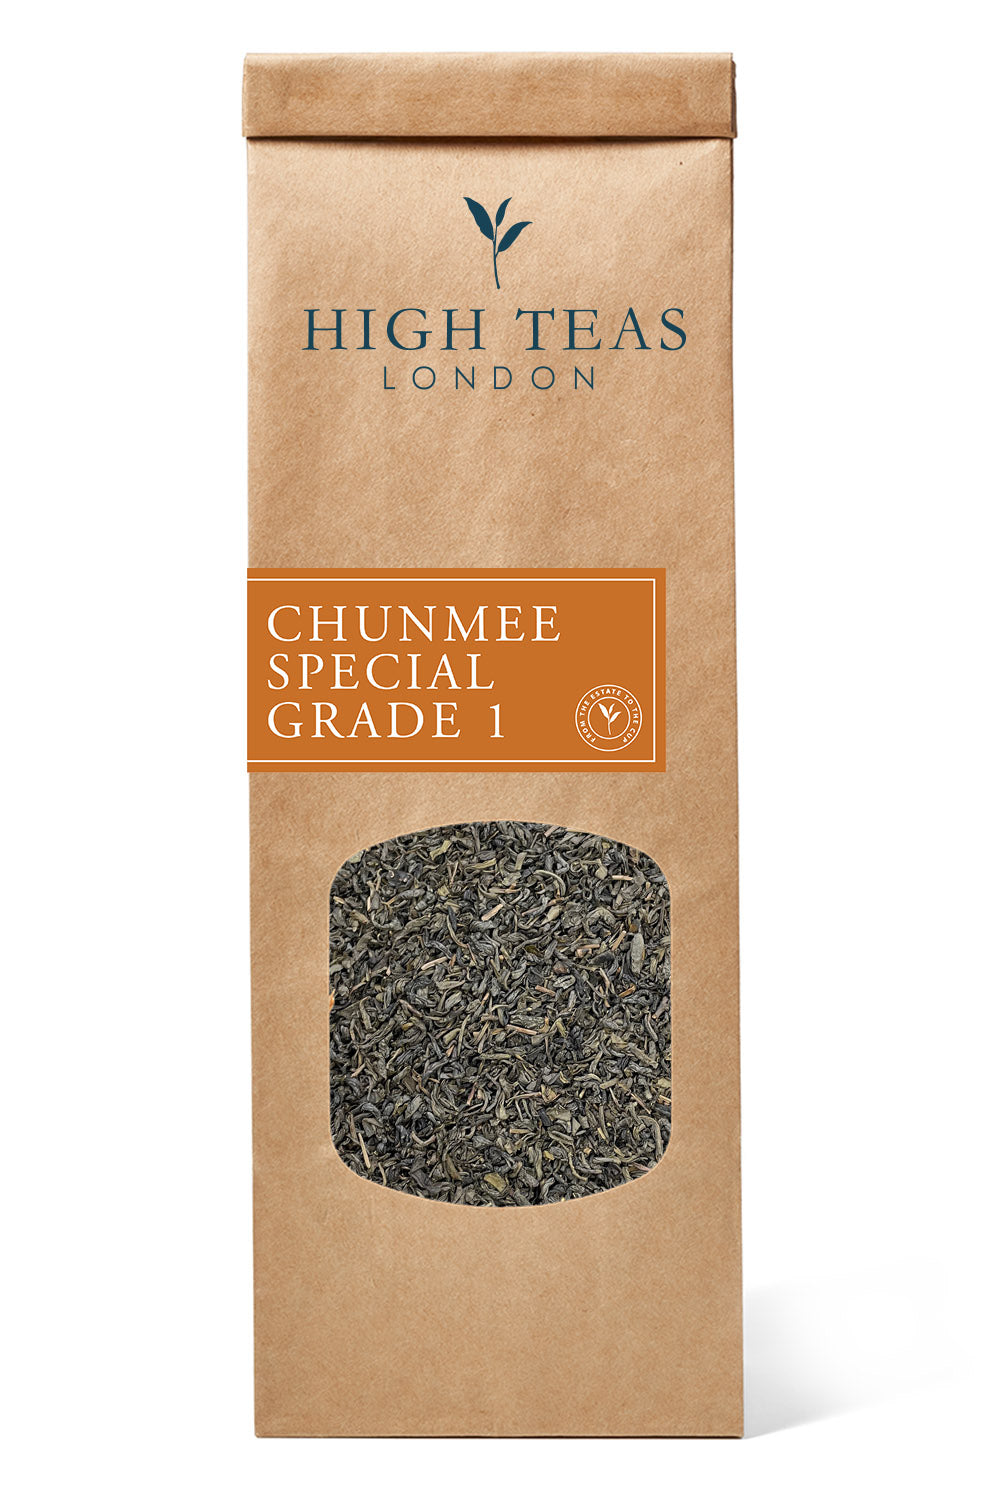 Chunmee Special Grade 1-50g-Loose Leaf Tea-High Teas